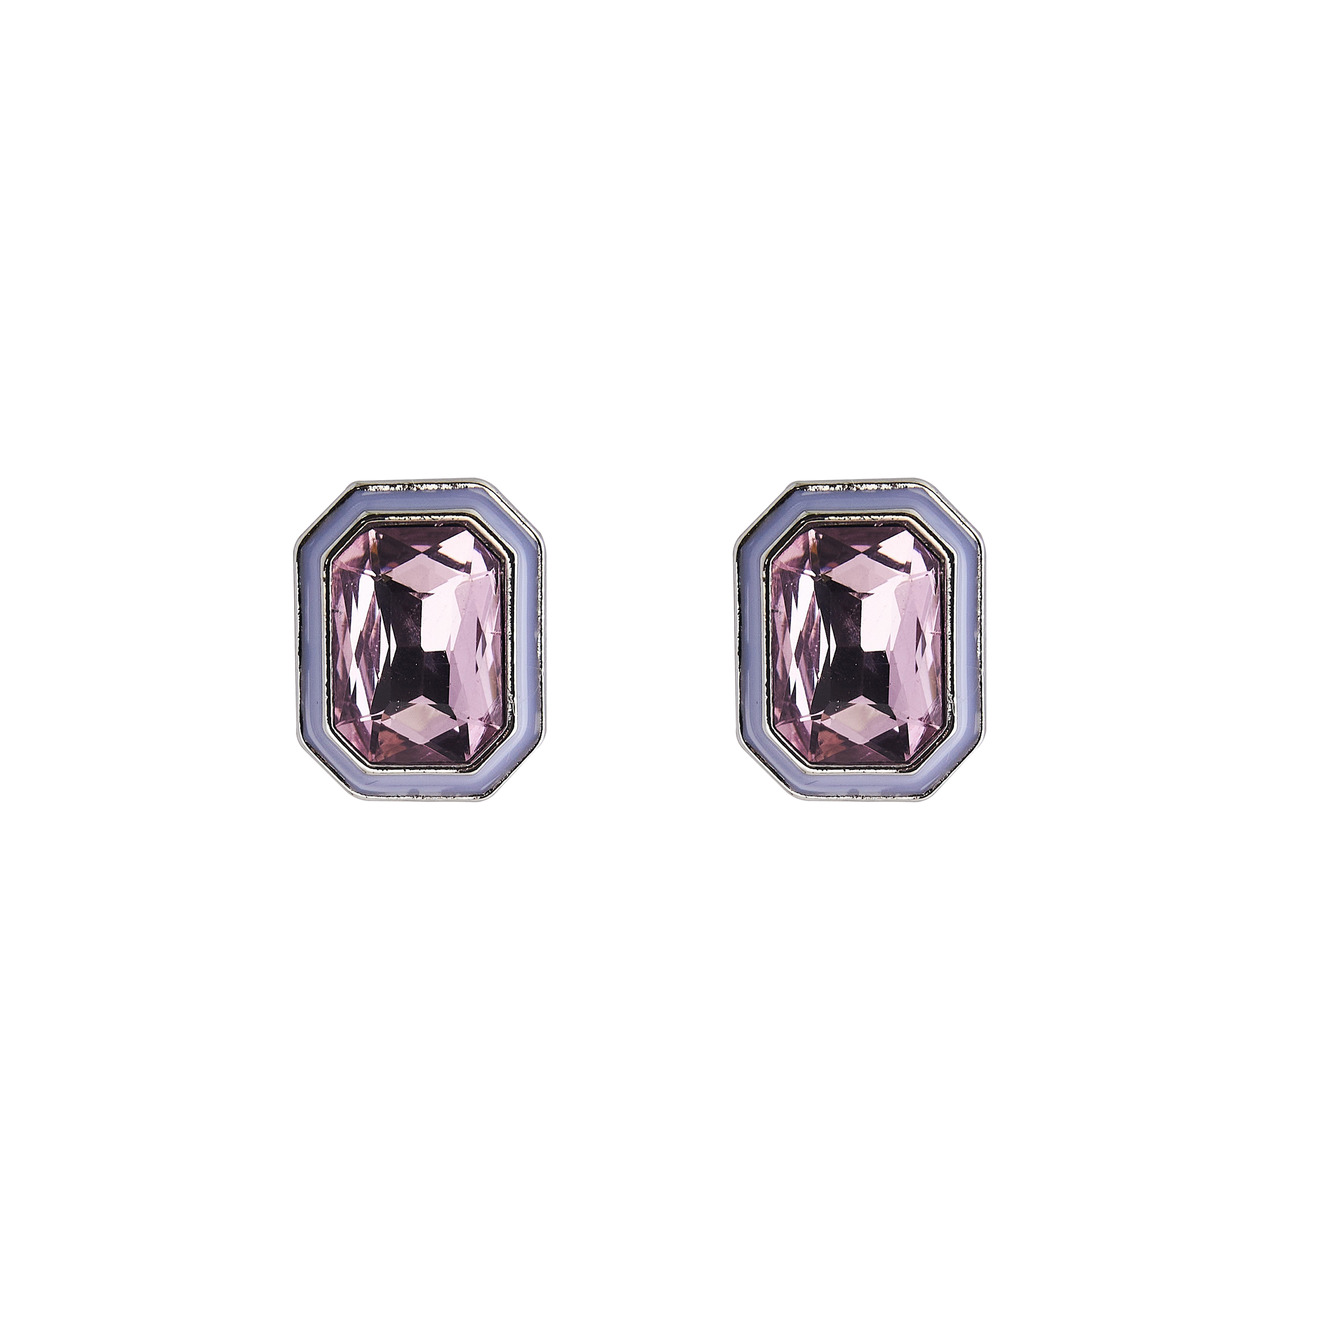 Herald Percy Серебристые серьги с розовыми кристаллами и белой эмалью herald percy серебристые серьги с розовыми сердцами с кристаллами